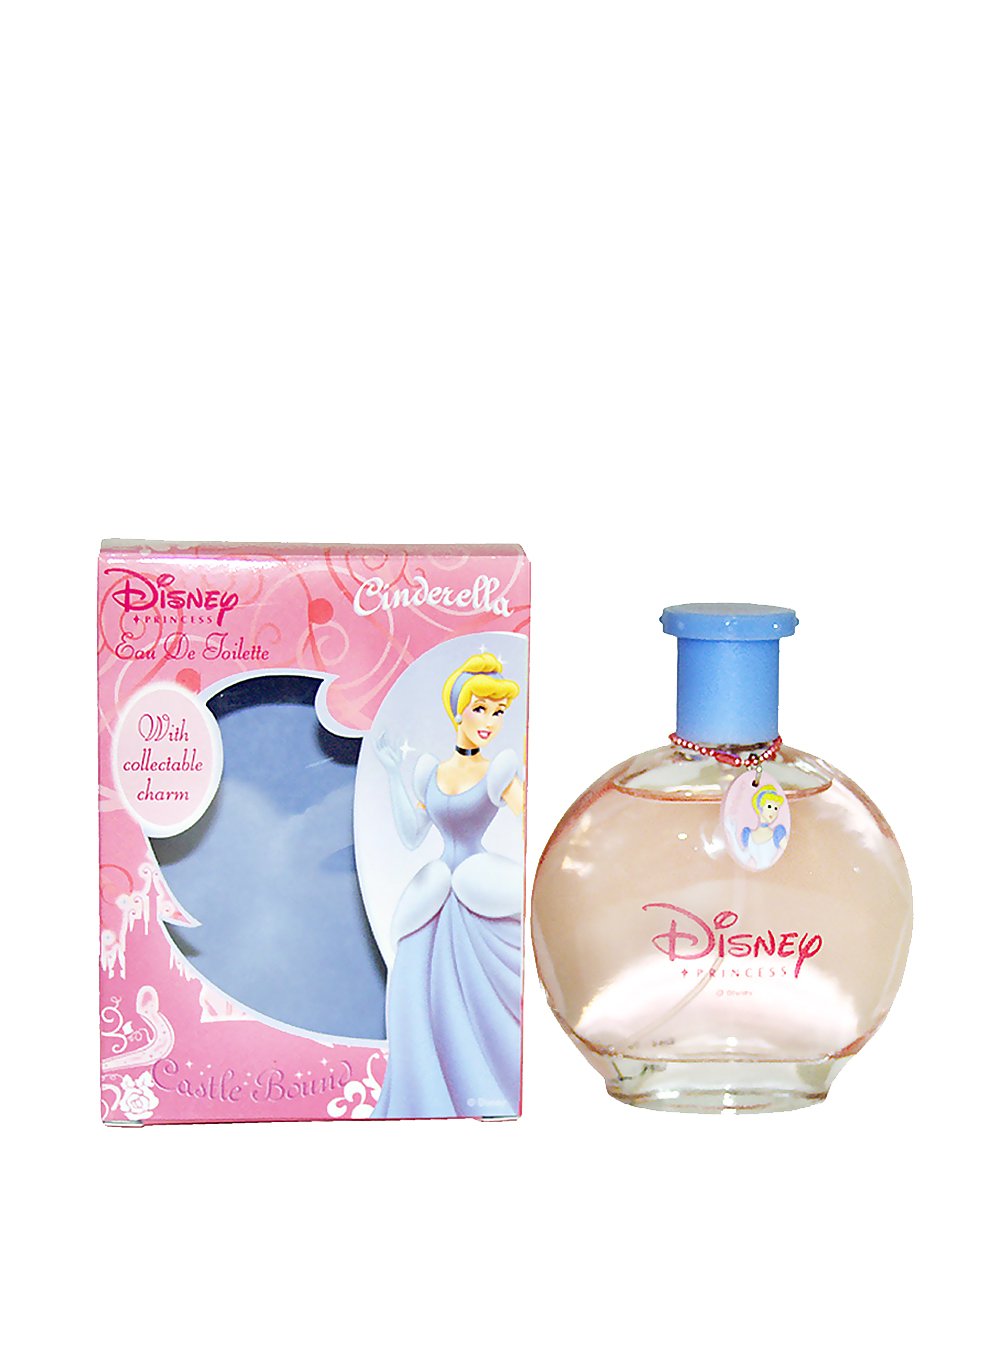 Disney Cinderella Kids Eau de Toilette Spray, 3.4 Ounce